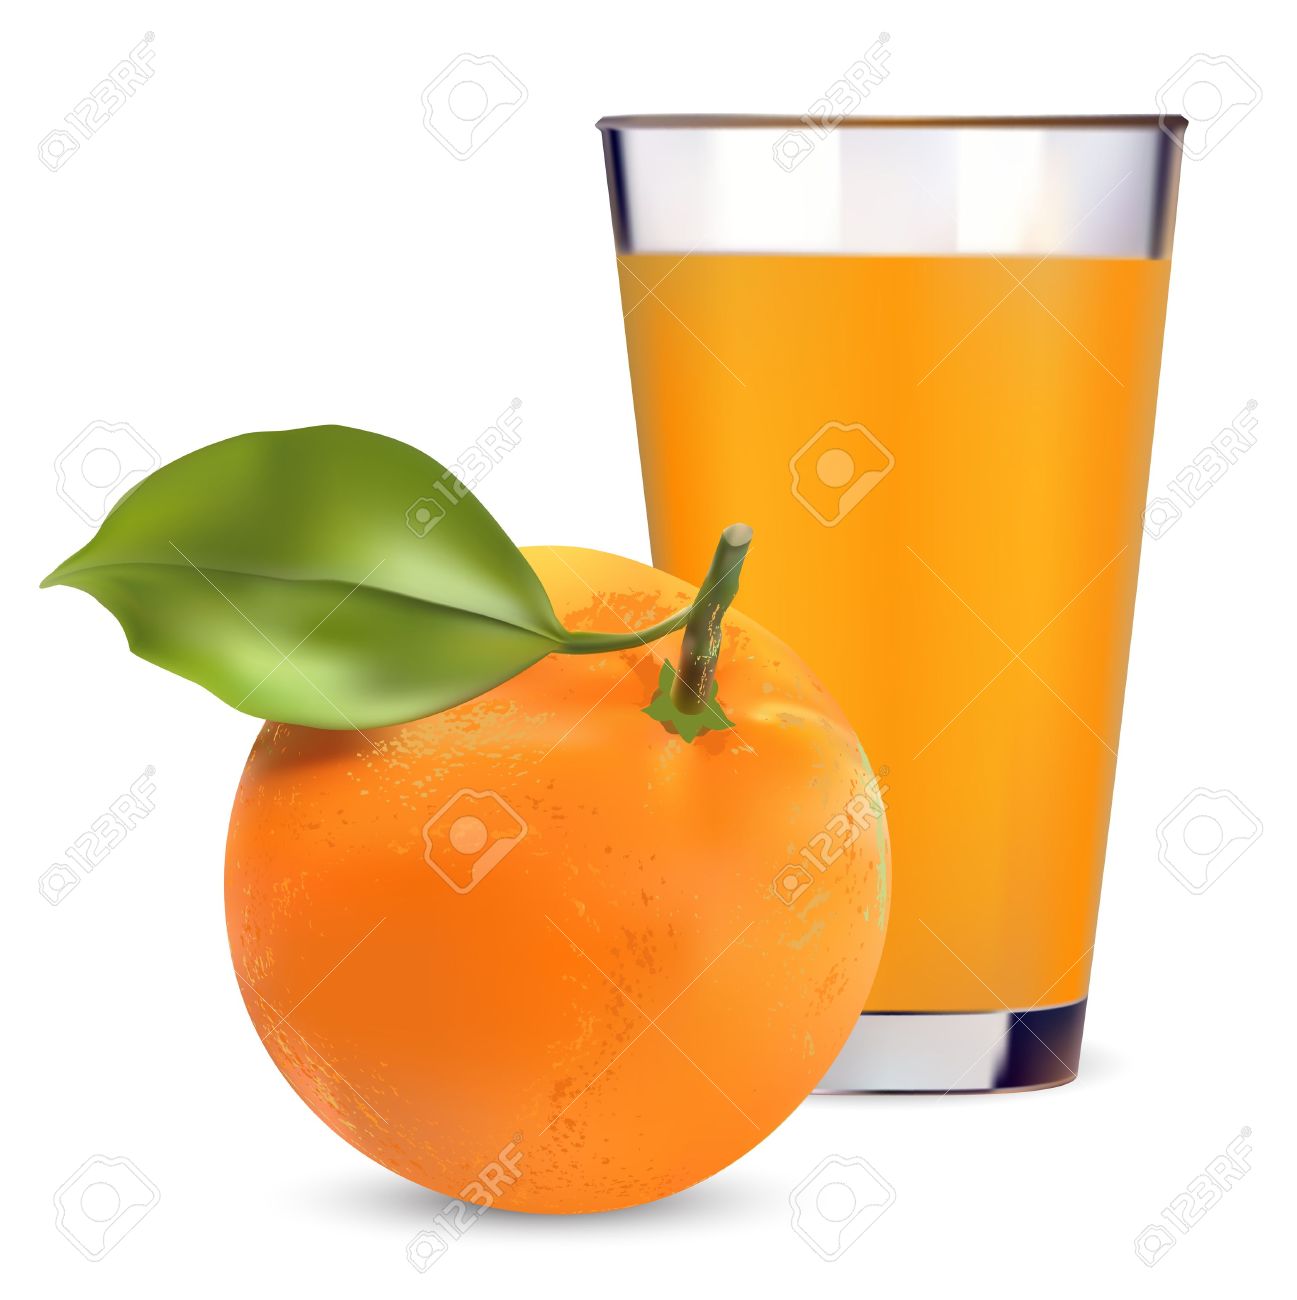 Orange juice vitamin clip art